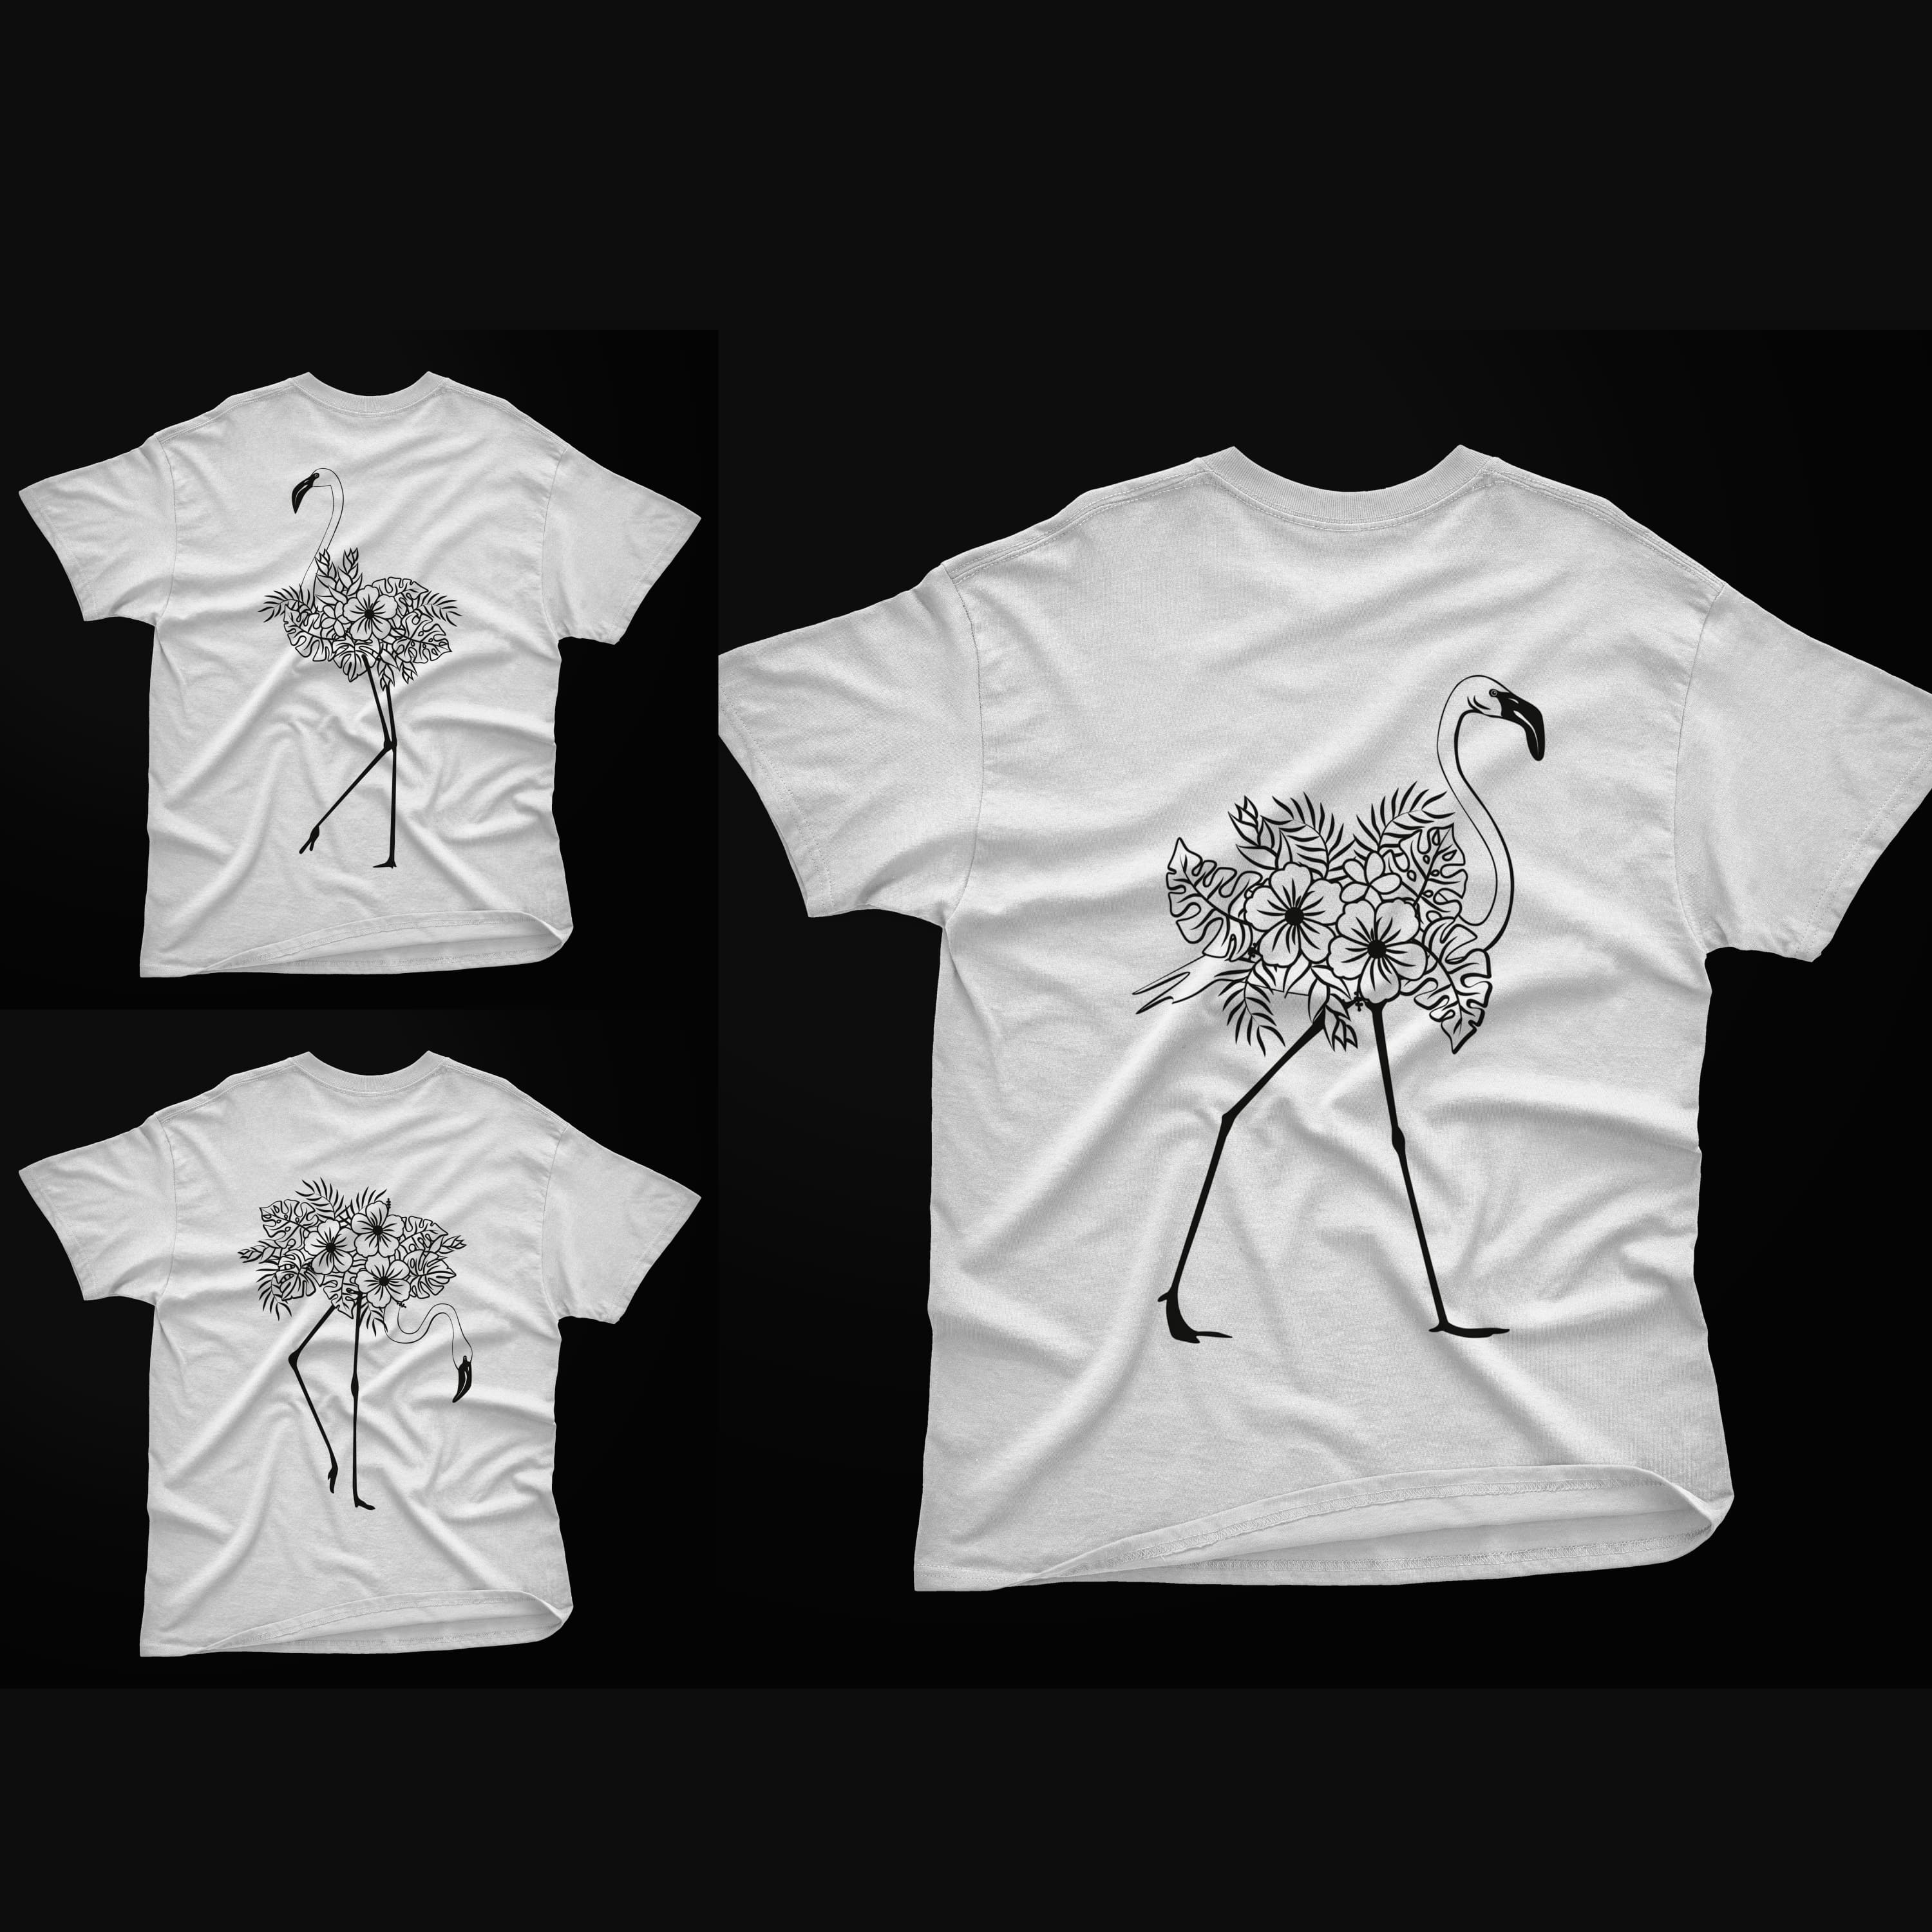 Floral Flamingo SVG T-shirt Designs Bundle cover.